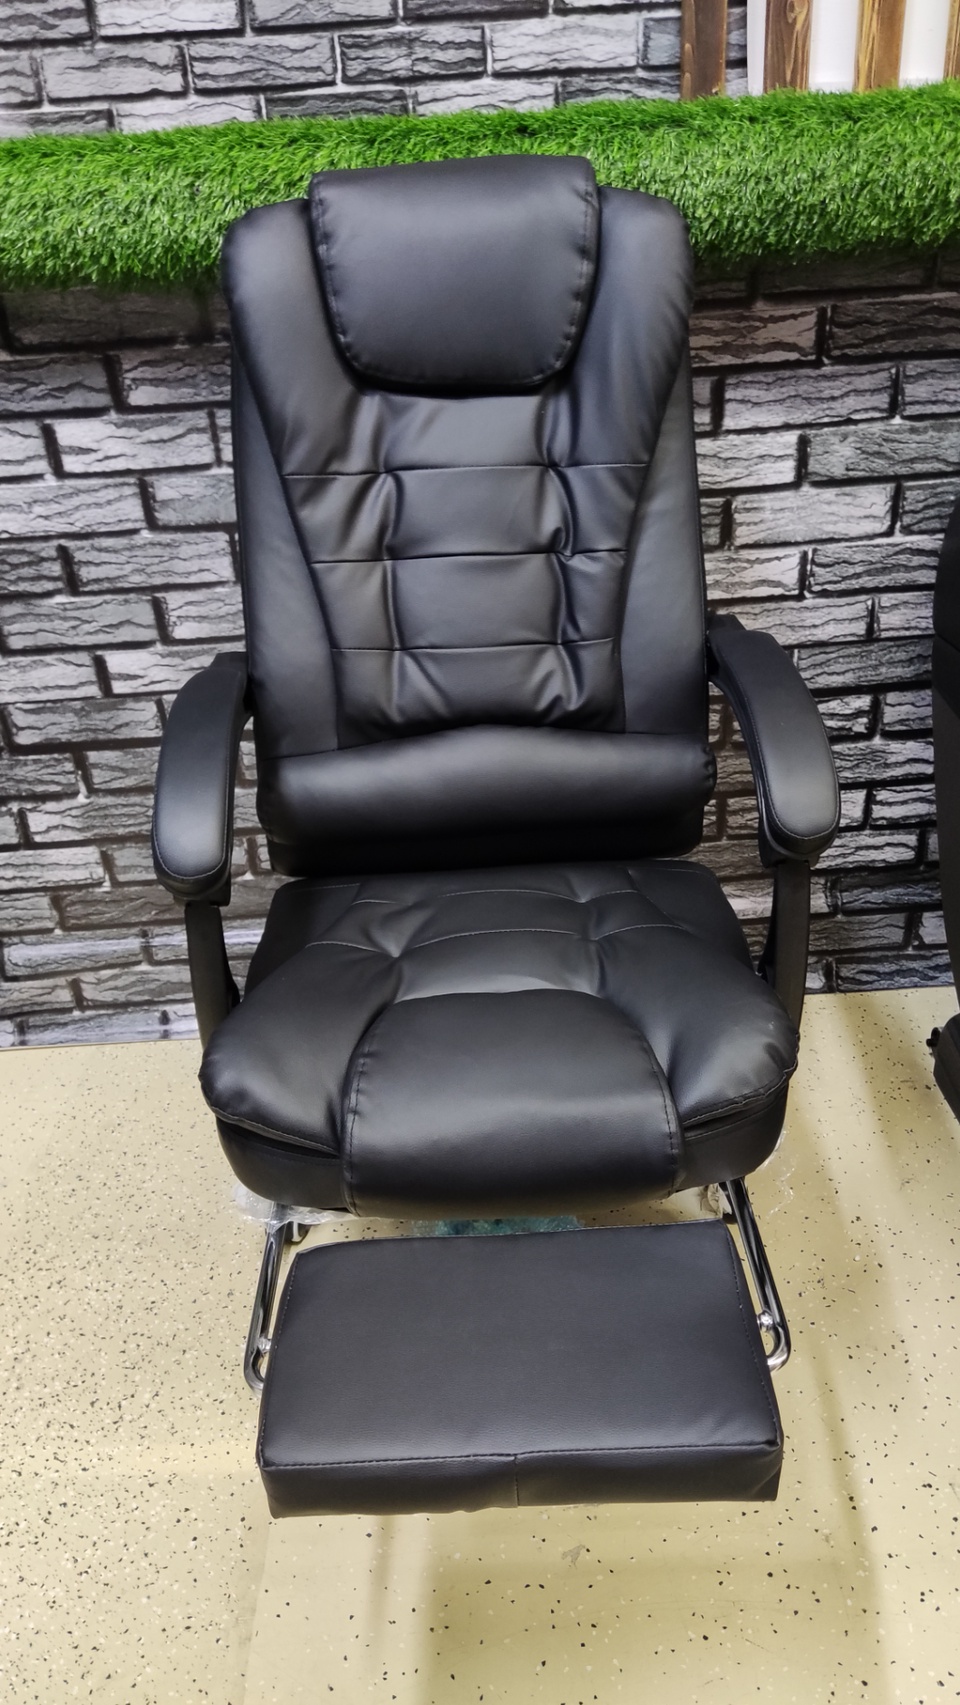 Кресло офисное со встроенным вибромассажем - 14 000 ₽, заказать онлайн.